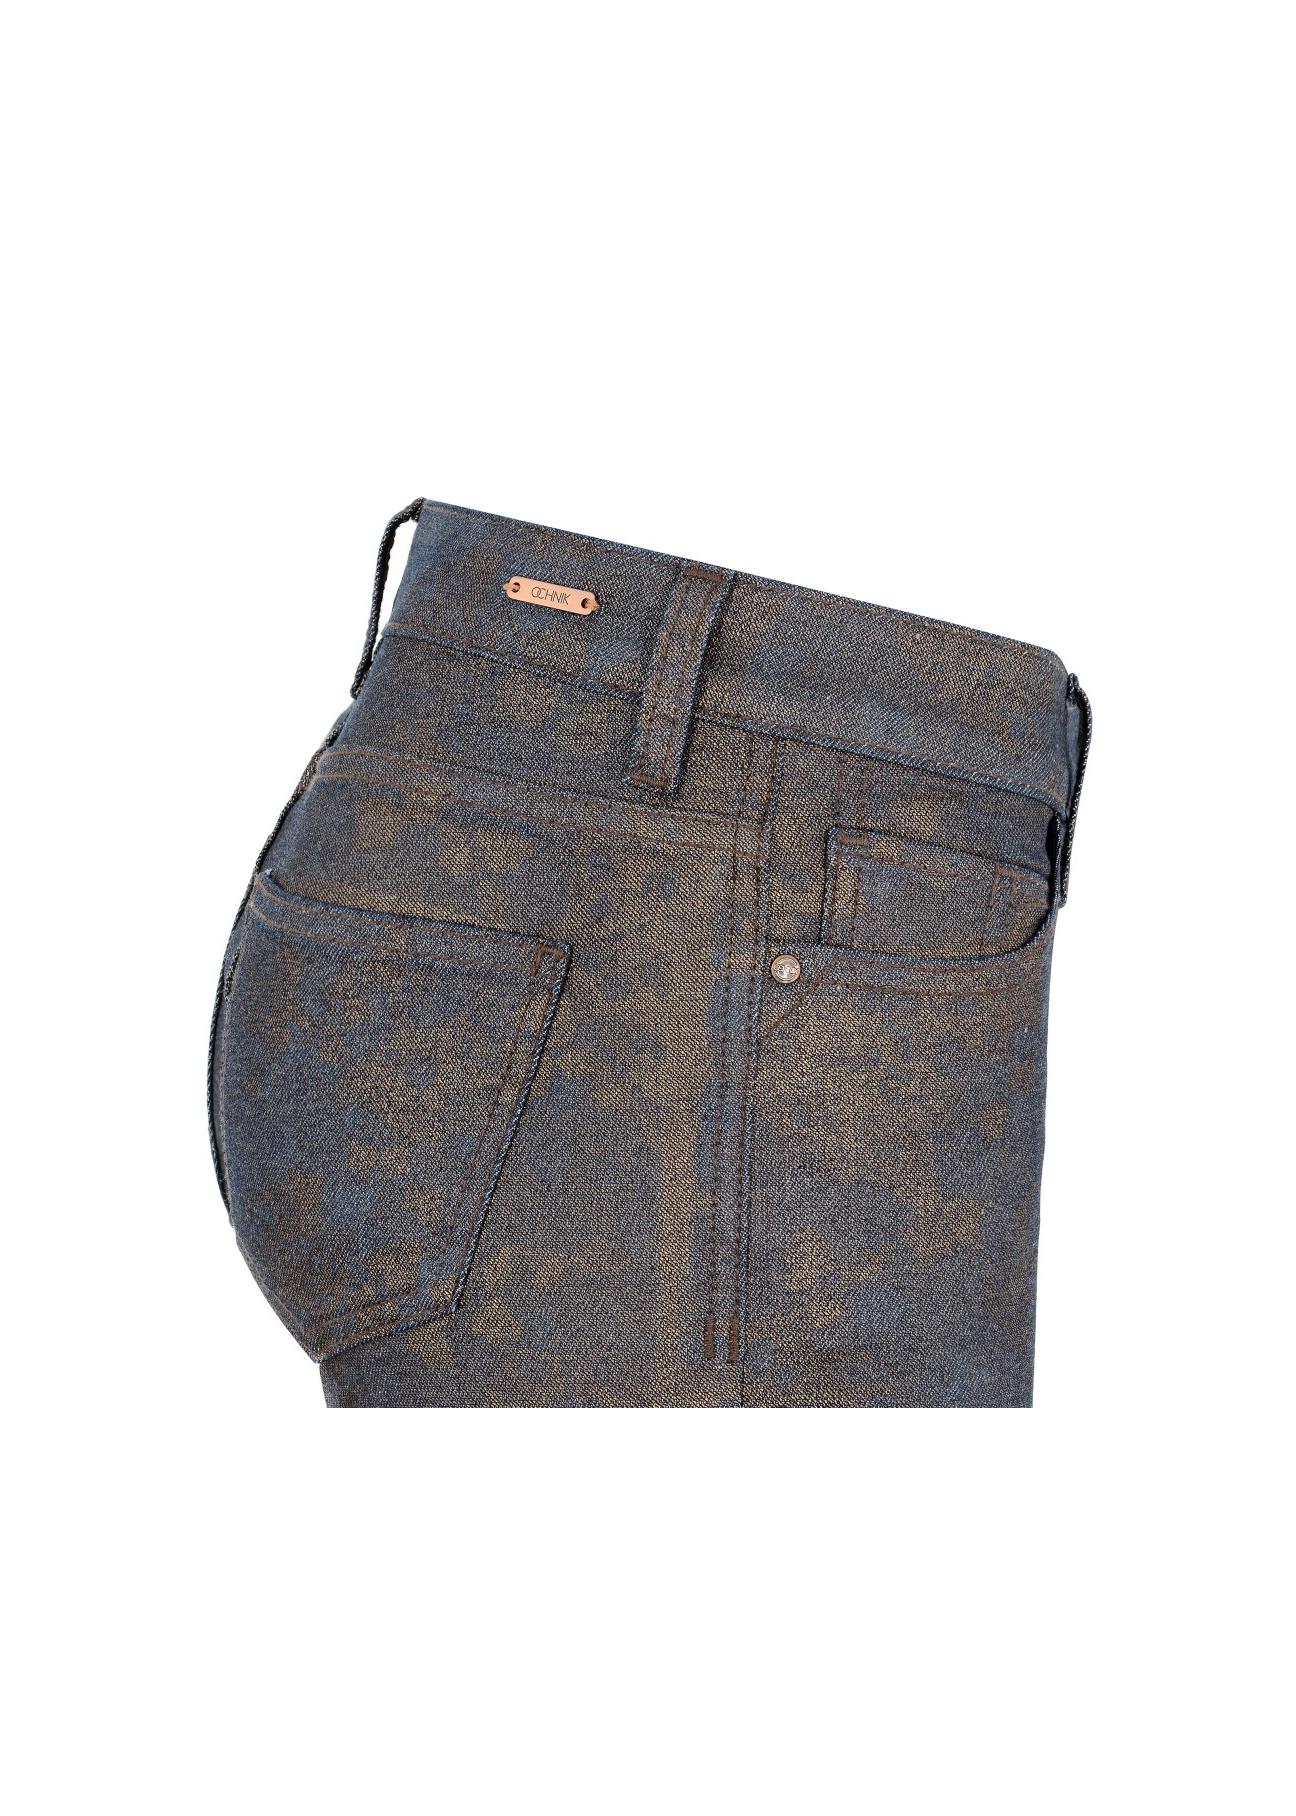 Metaliczne jeansy damskie JEADT-0002-69(Z17)